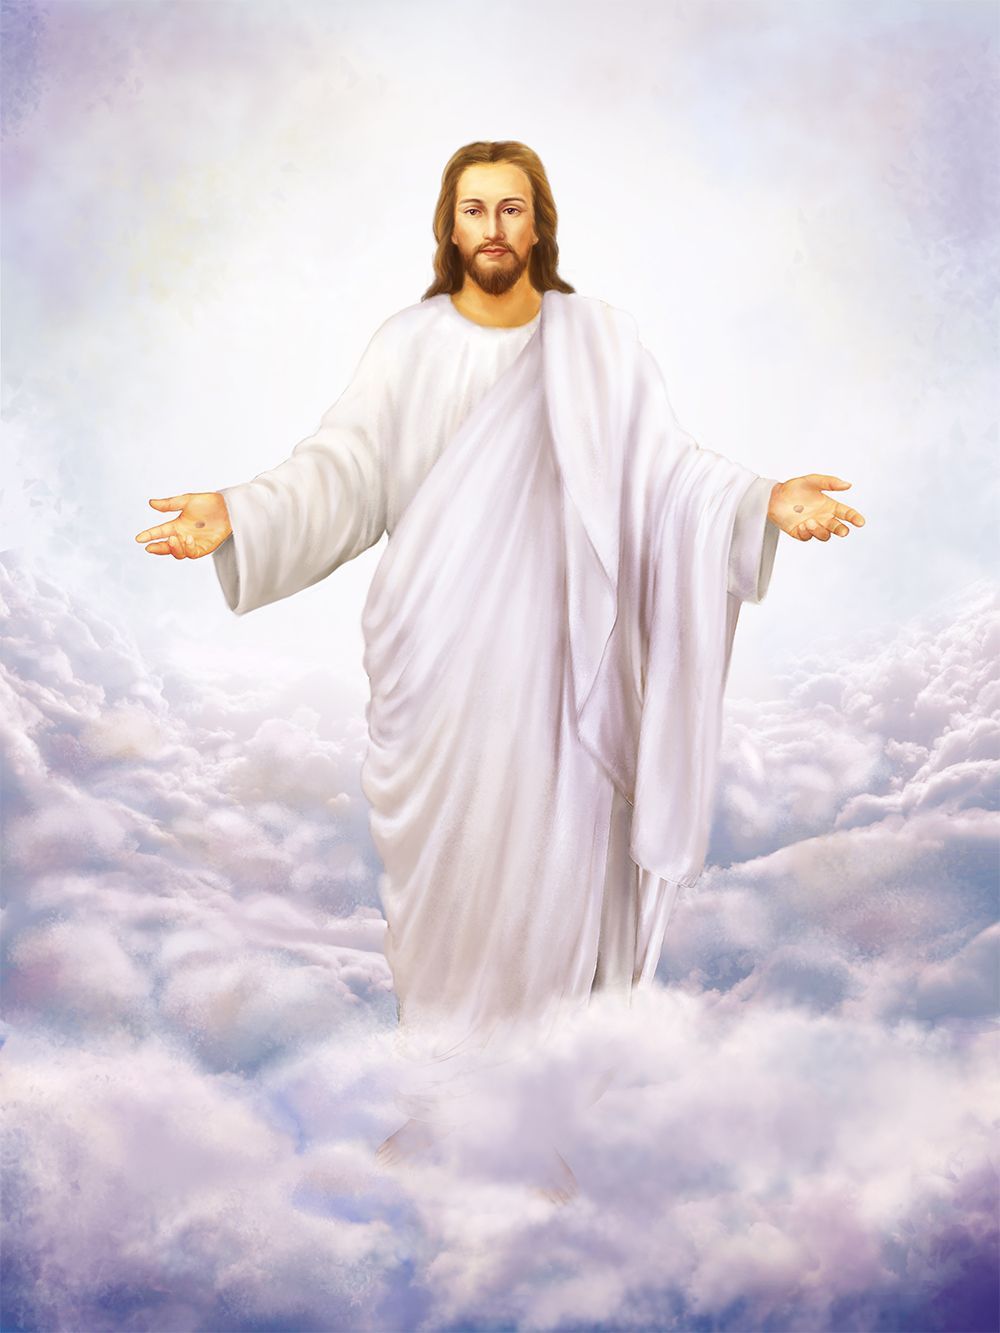 God Image Of Jesus